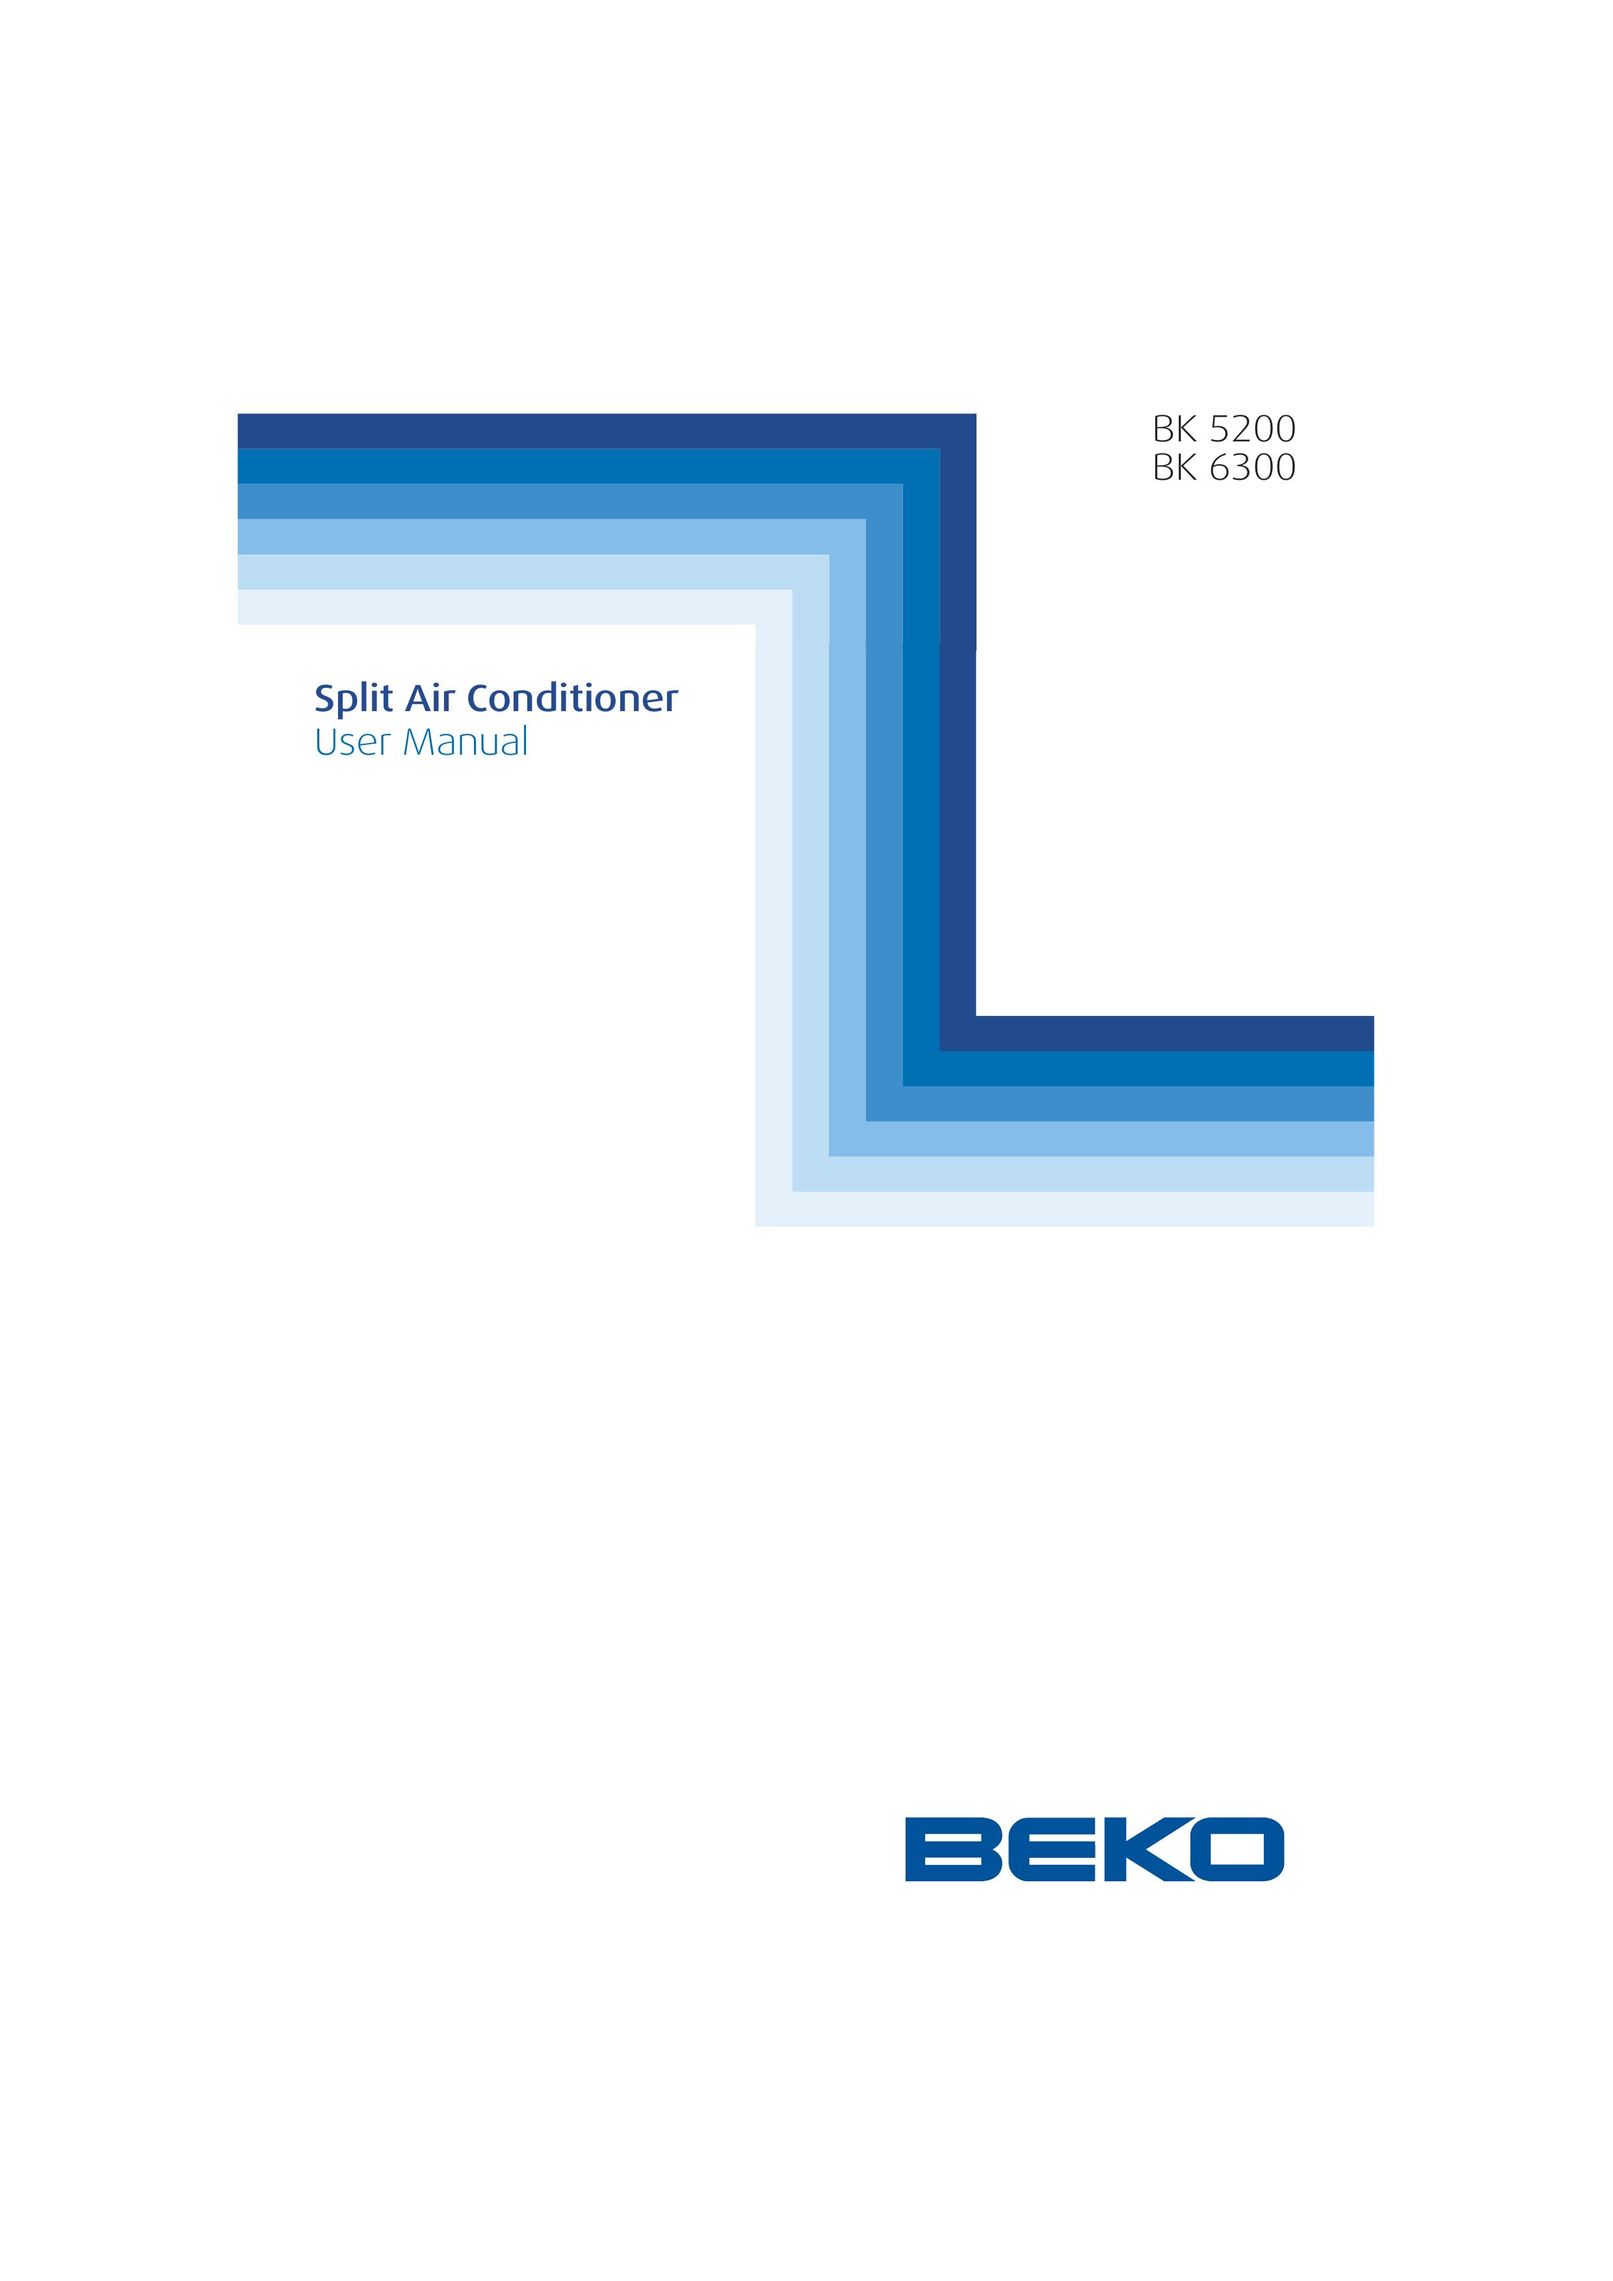 Beko BK 6300 Air Conditioner User Manual